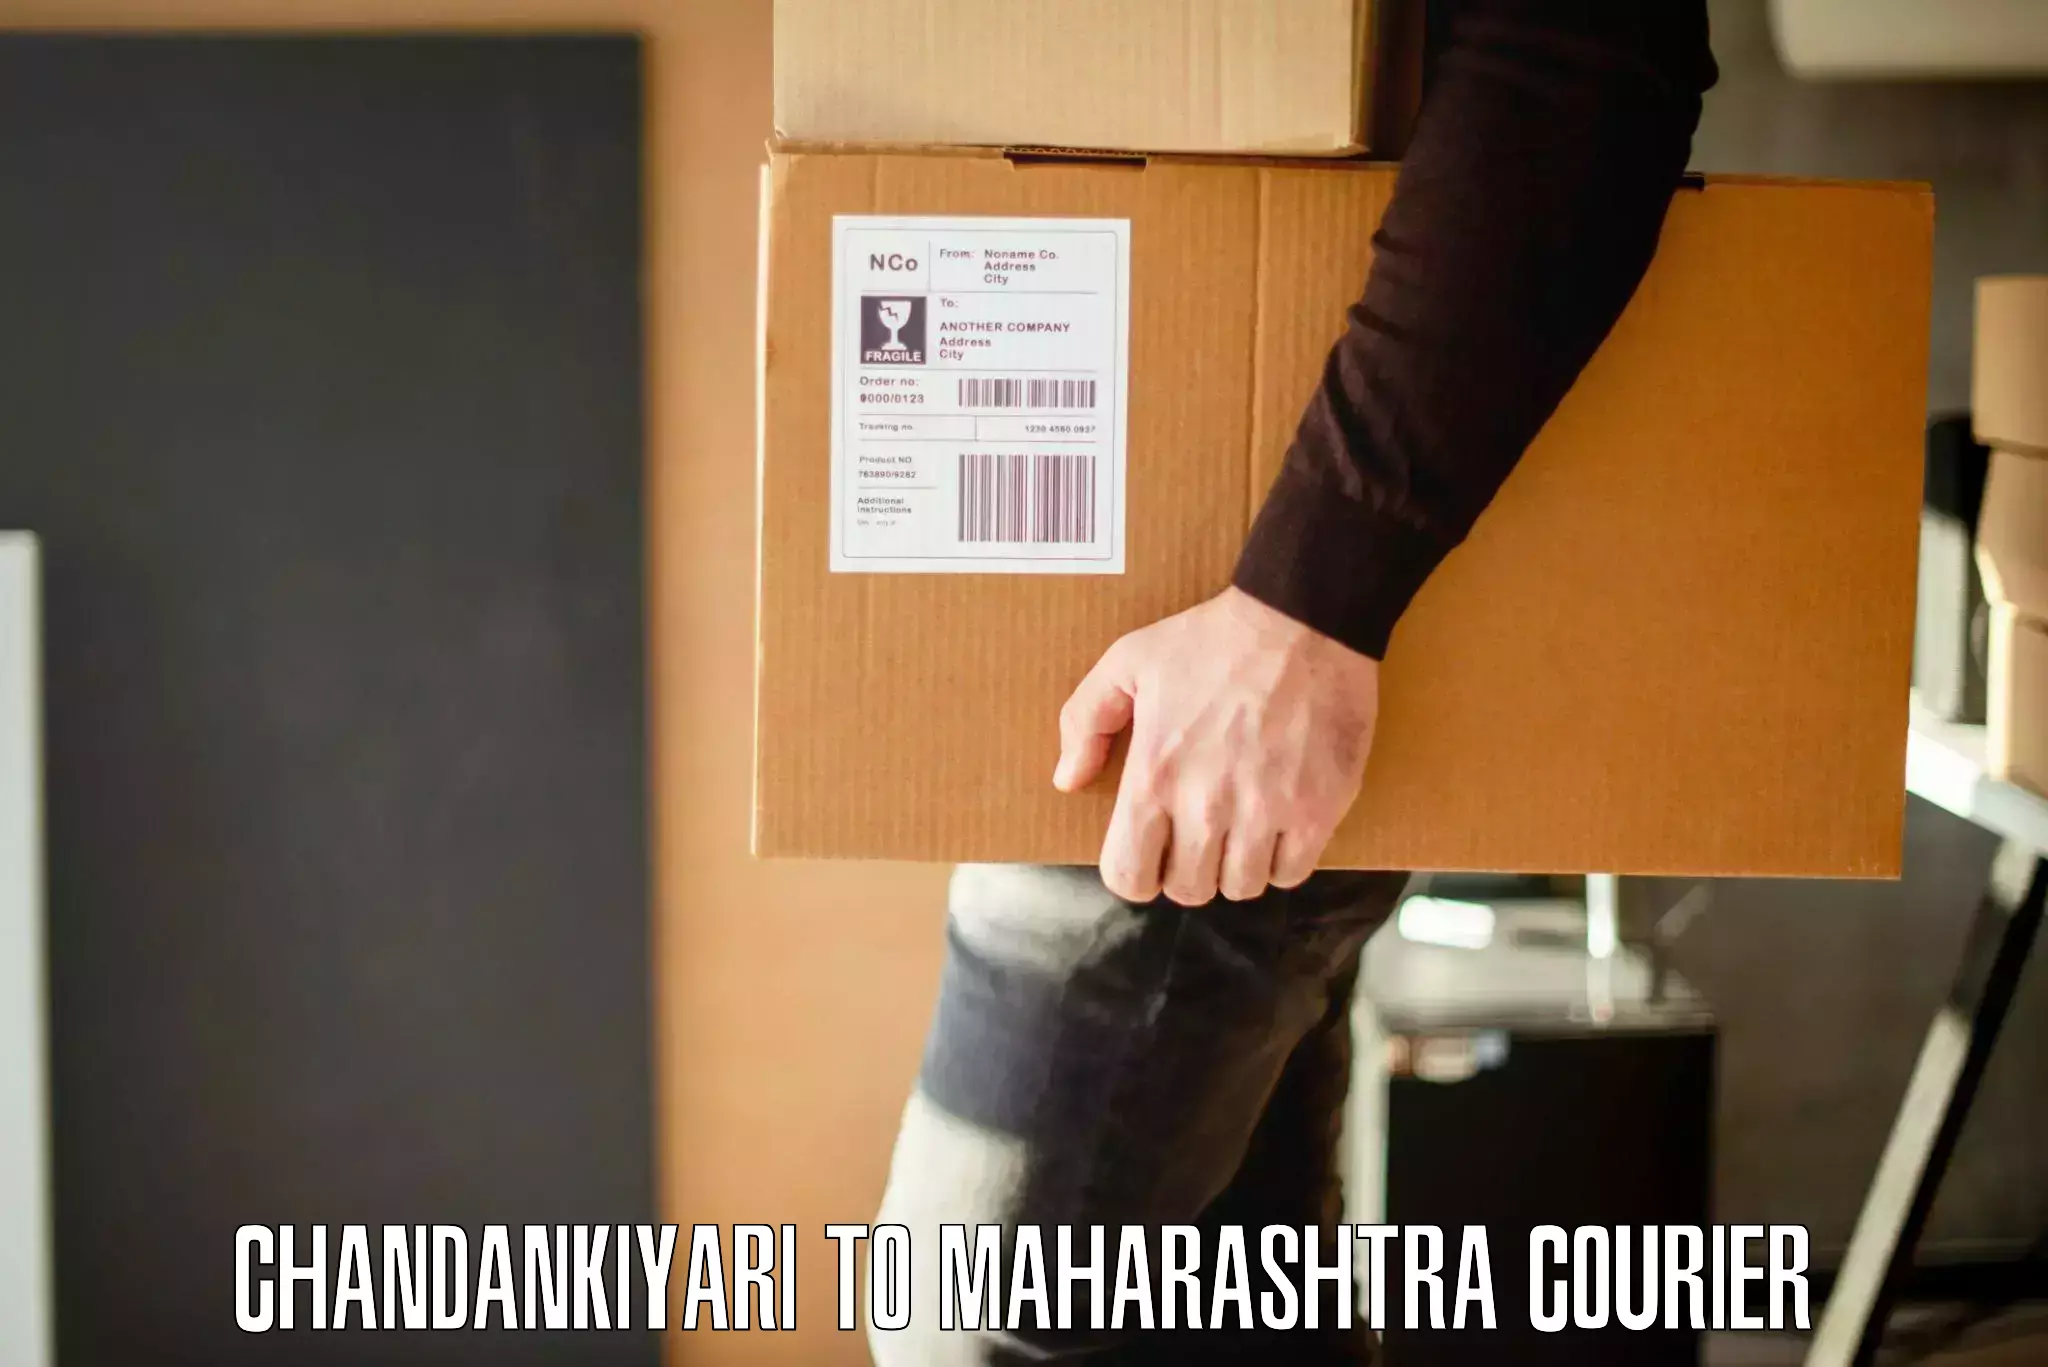 Professional movers Chandankiyari to Yavatmal